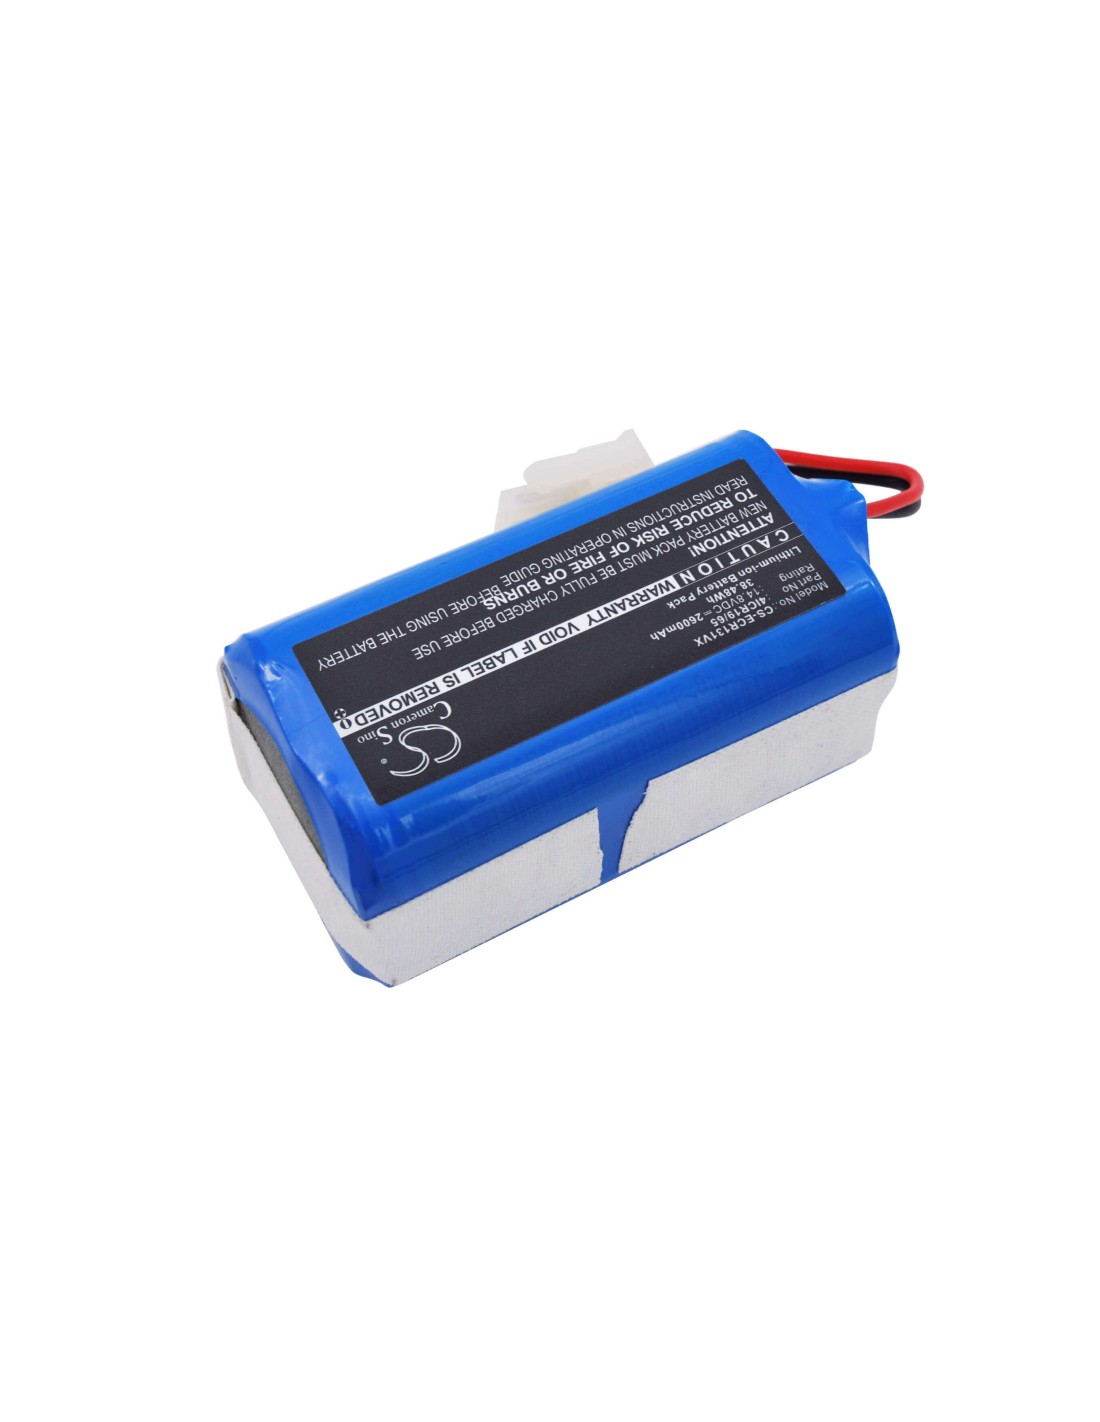 Battery for Ecovacs Cen 540, Deebot Cr130, V780 14.8V, 2600mAh - 38.48Wh